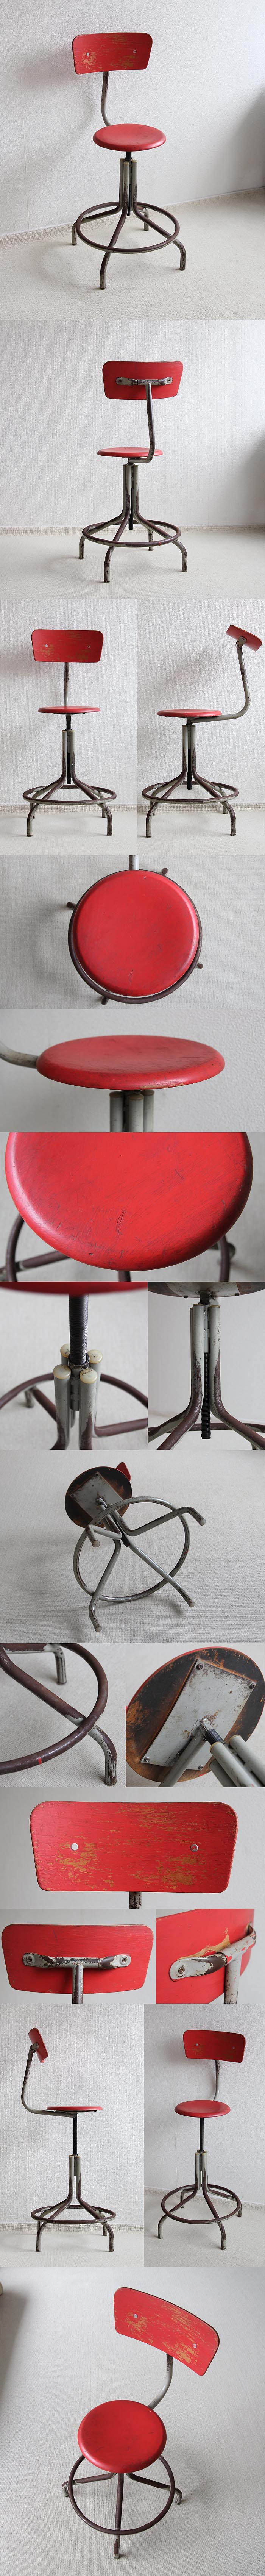 イギリス アンティーク インダストリアルチェア 工業用椅子 アイアン スチール「ペイント家具」P-342